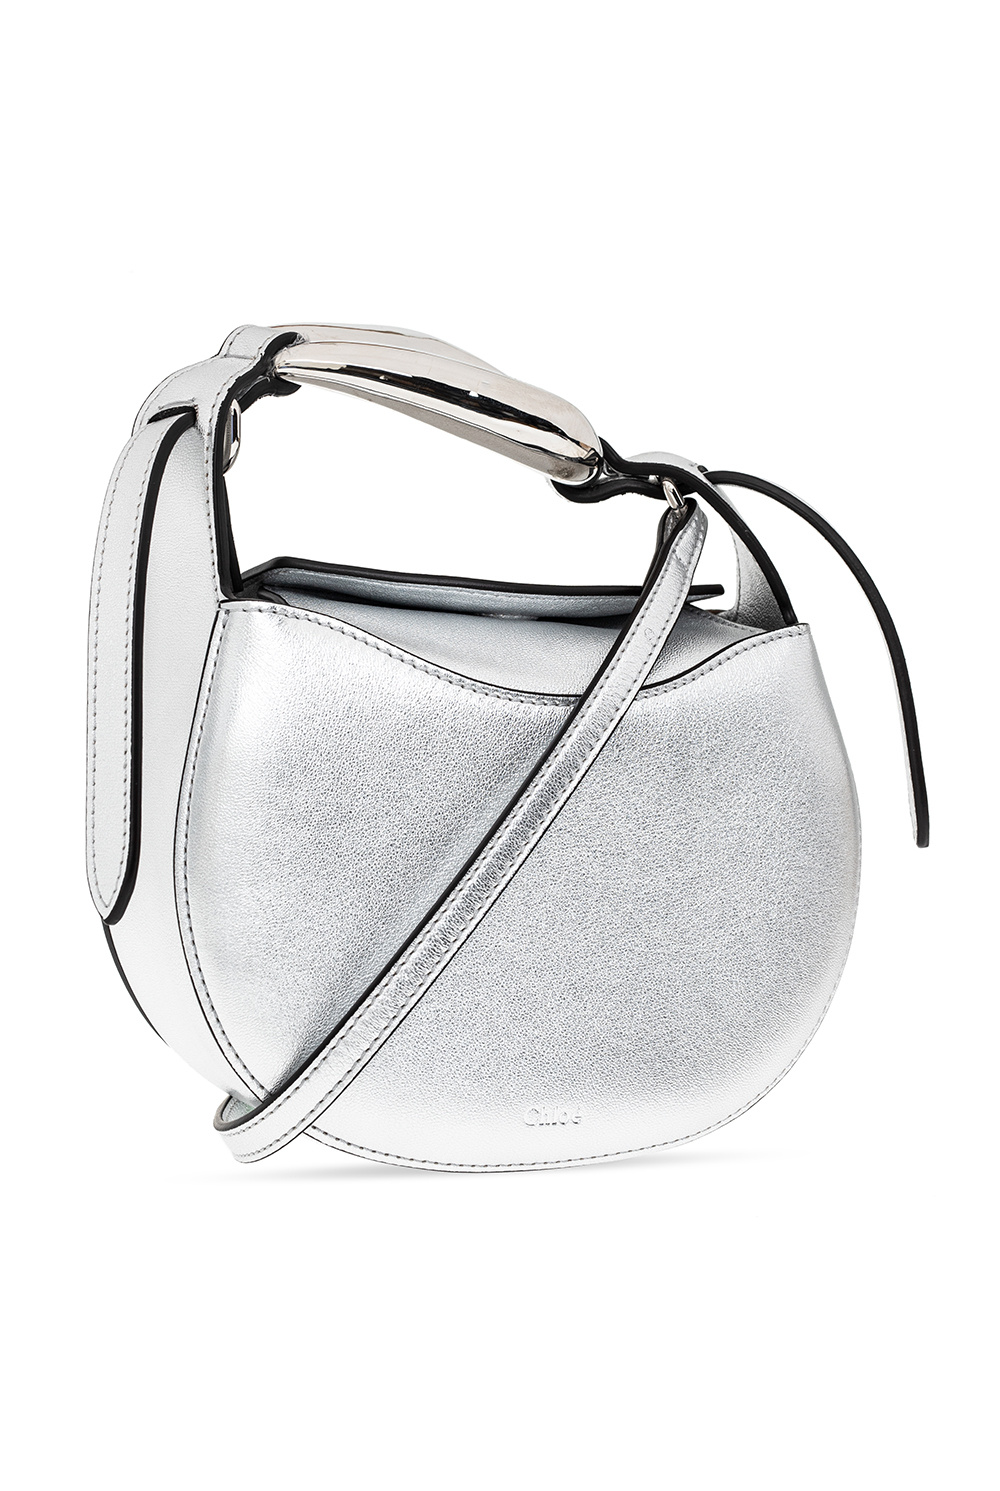 Chloé ‘Kiss Small’ shoulder bag